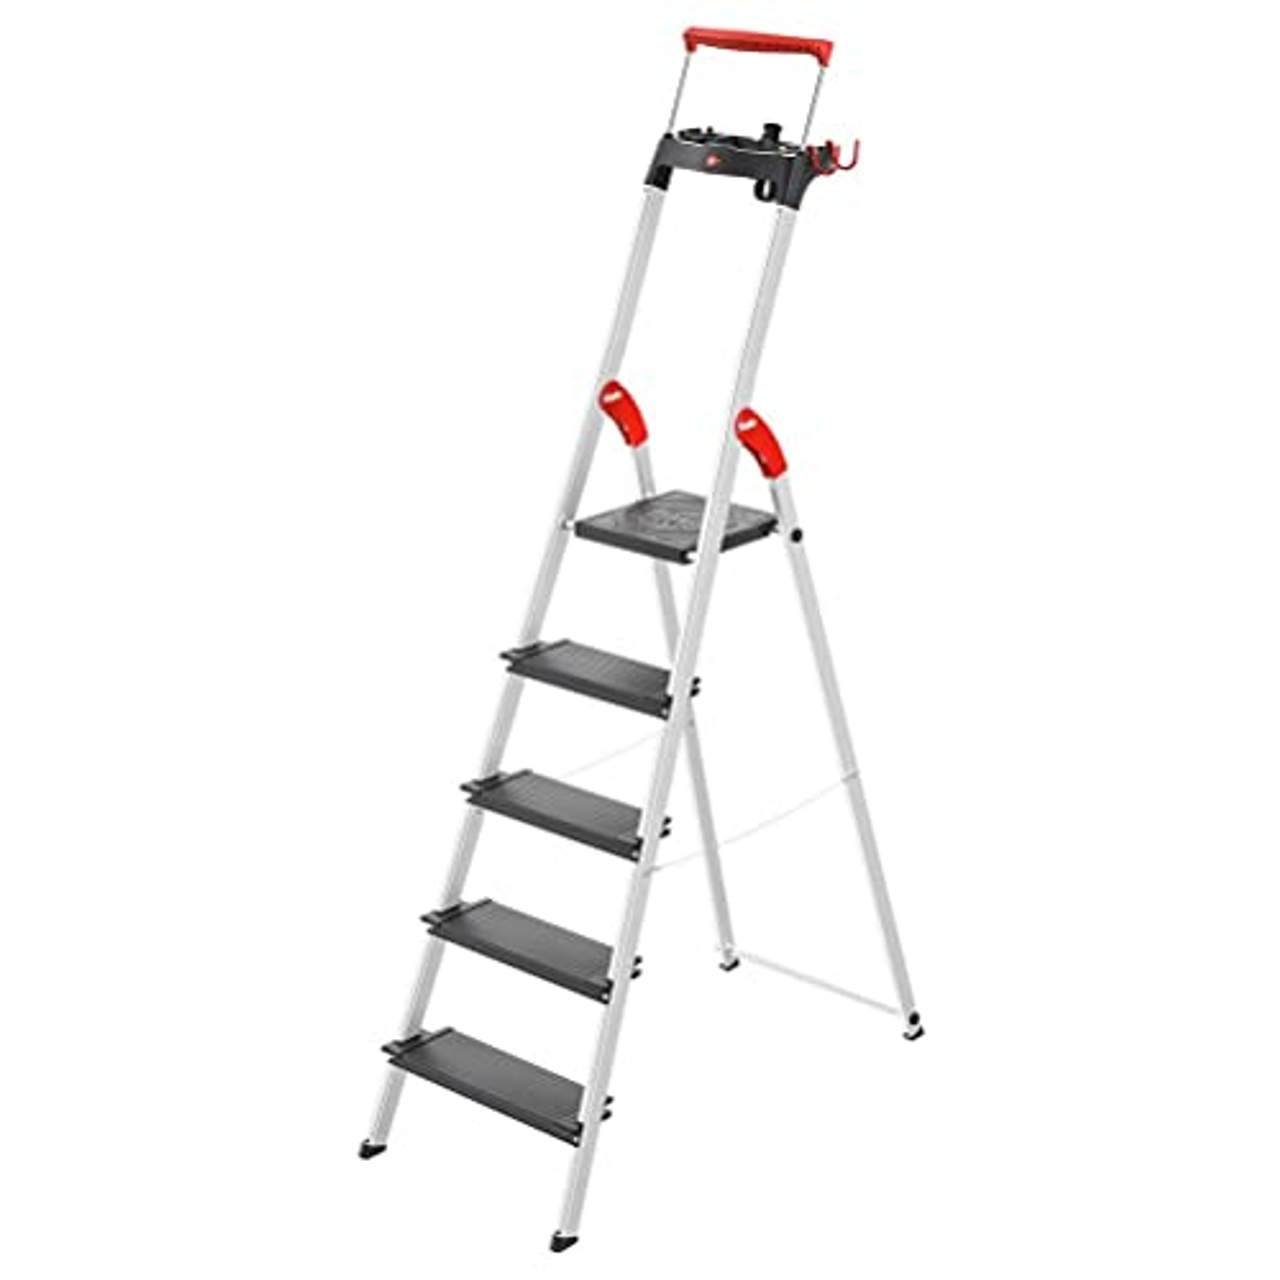 4 5 Stufen Leiter Auswahl 3 Stahl Haushaltsleiter Klapptritt Stehleiter 2 